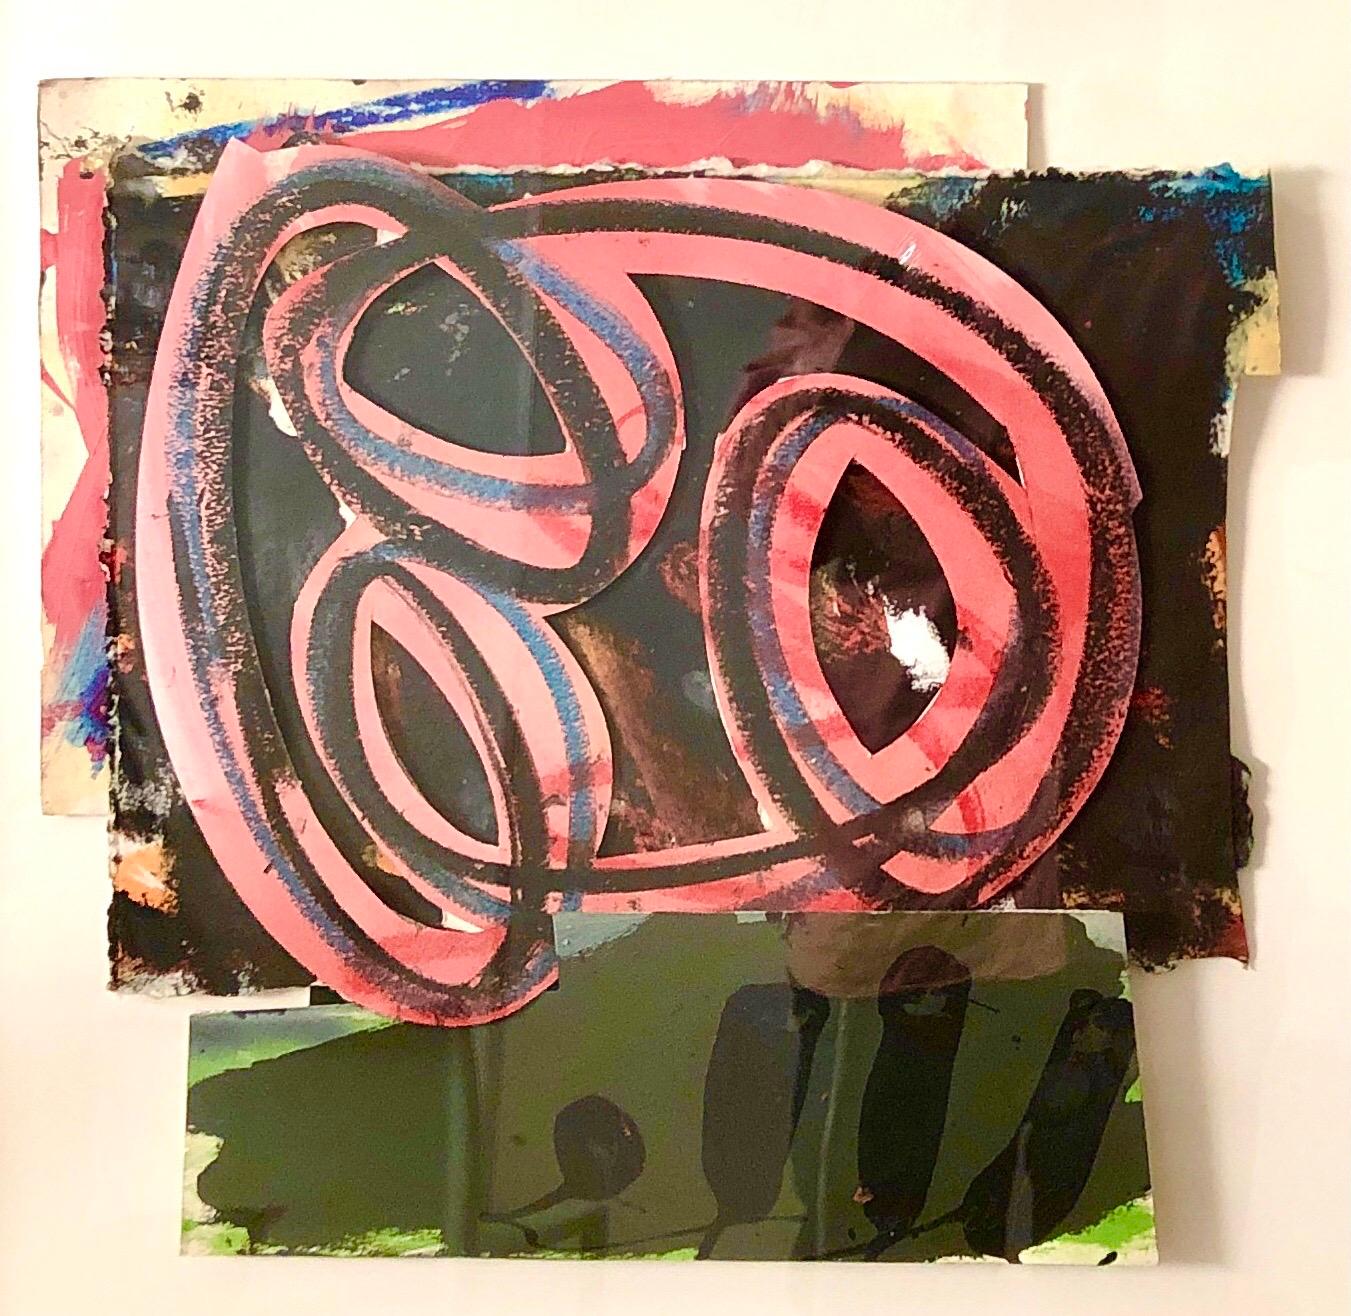 Peinture pop art expressionniste abstraite des années 1980, collage, assemblage Hugh O''Donnell - Gris Abstract Painting par Hugh O'Donnell